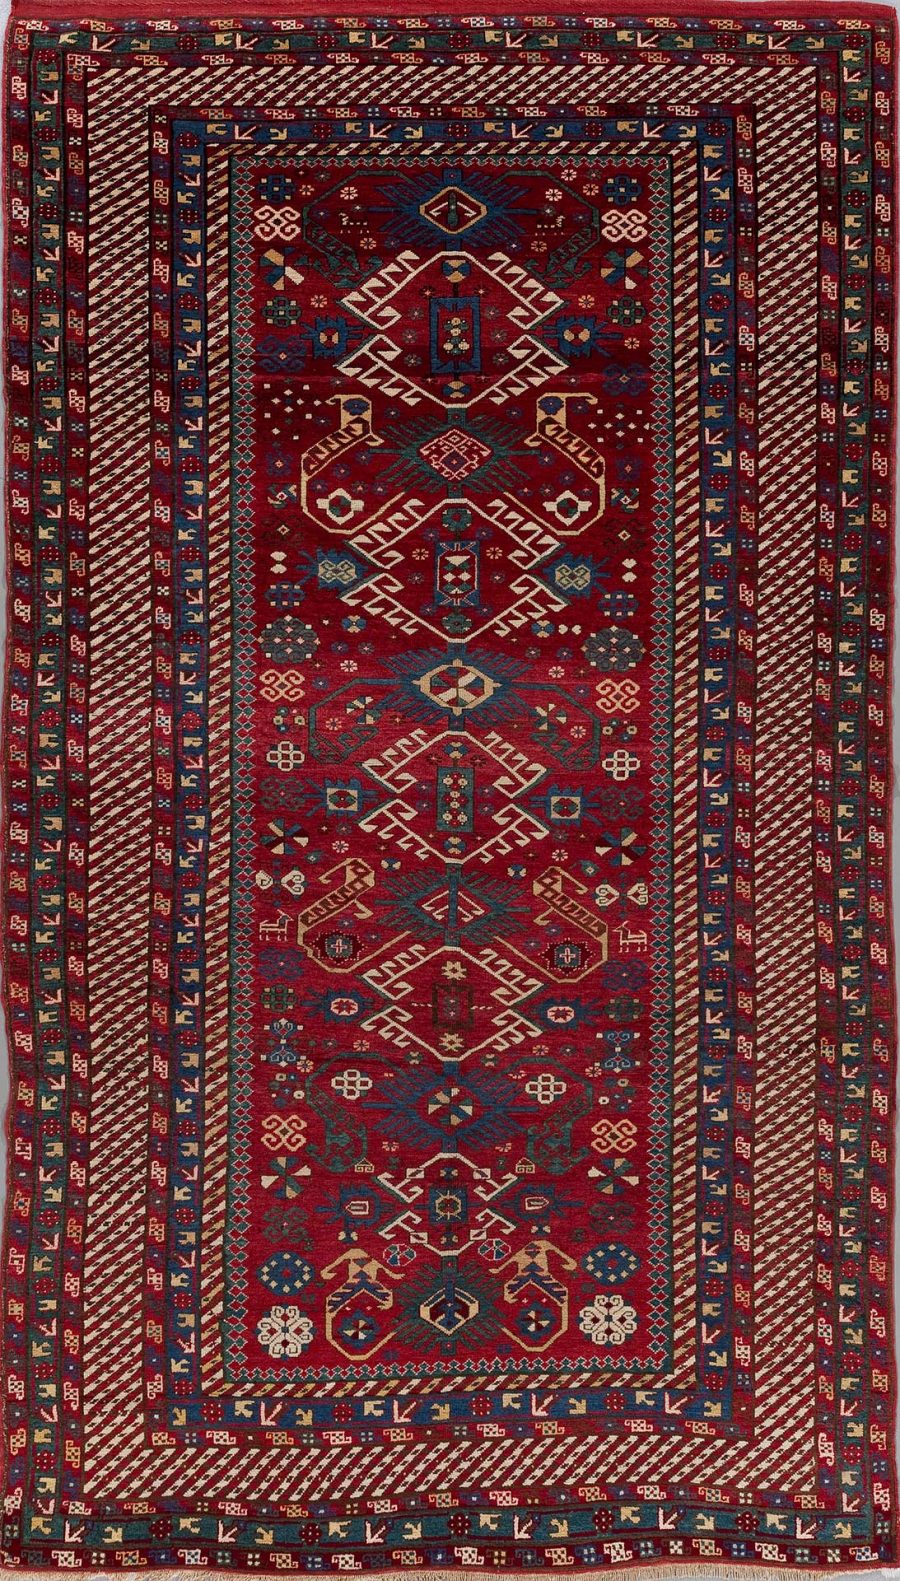 Traditioneller, handgewebter Teppich mit komplexen Mustern in Rot-, Blau- und Beigetönen, mit zentralen geometrischen und floralen Designelementen, umgeben von mehreren bestickten Bordüren.